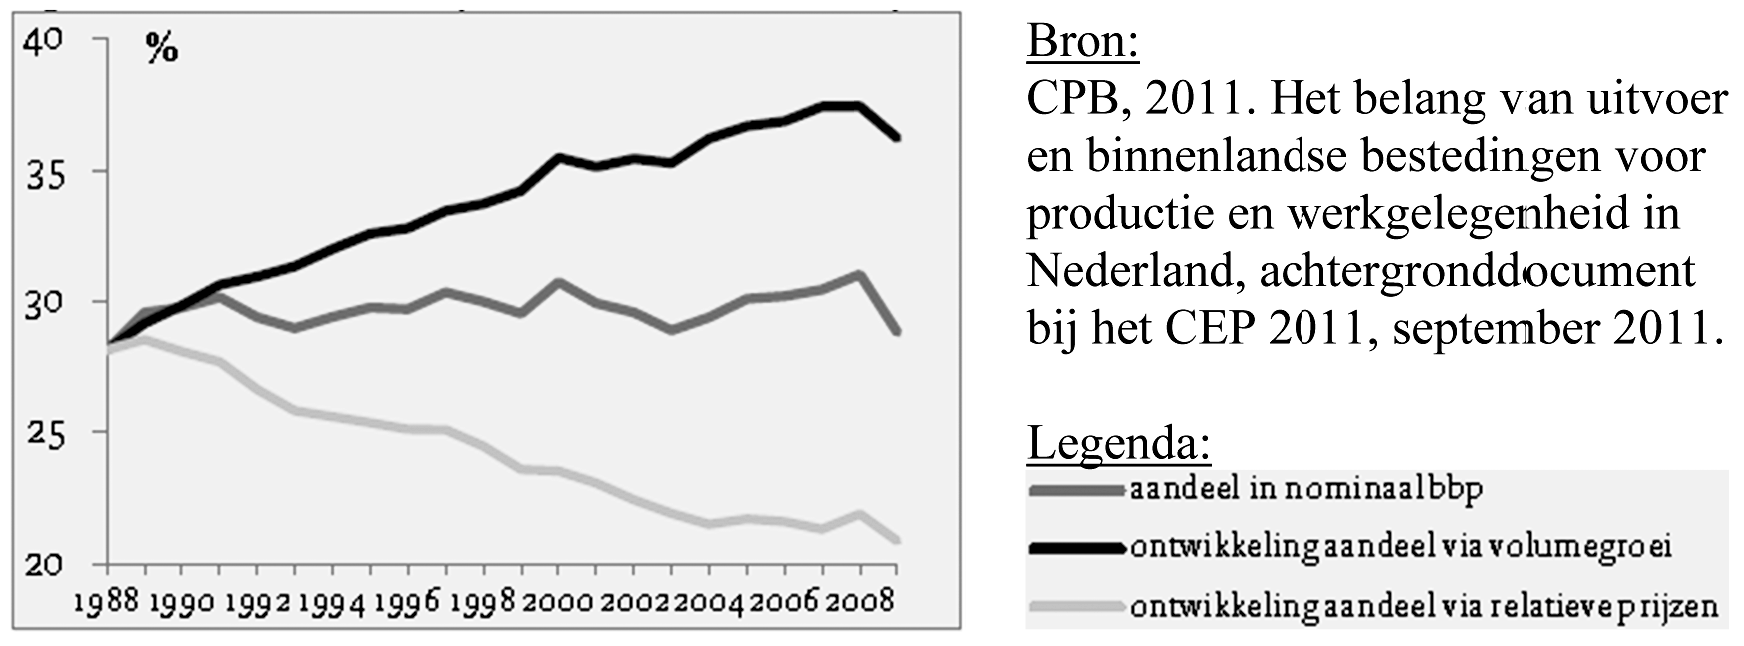 Grafiek 2. Aandeel van uitvoer in bruto binnenslands product